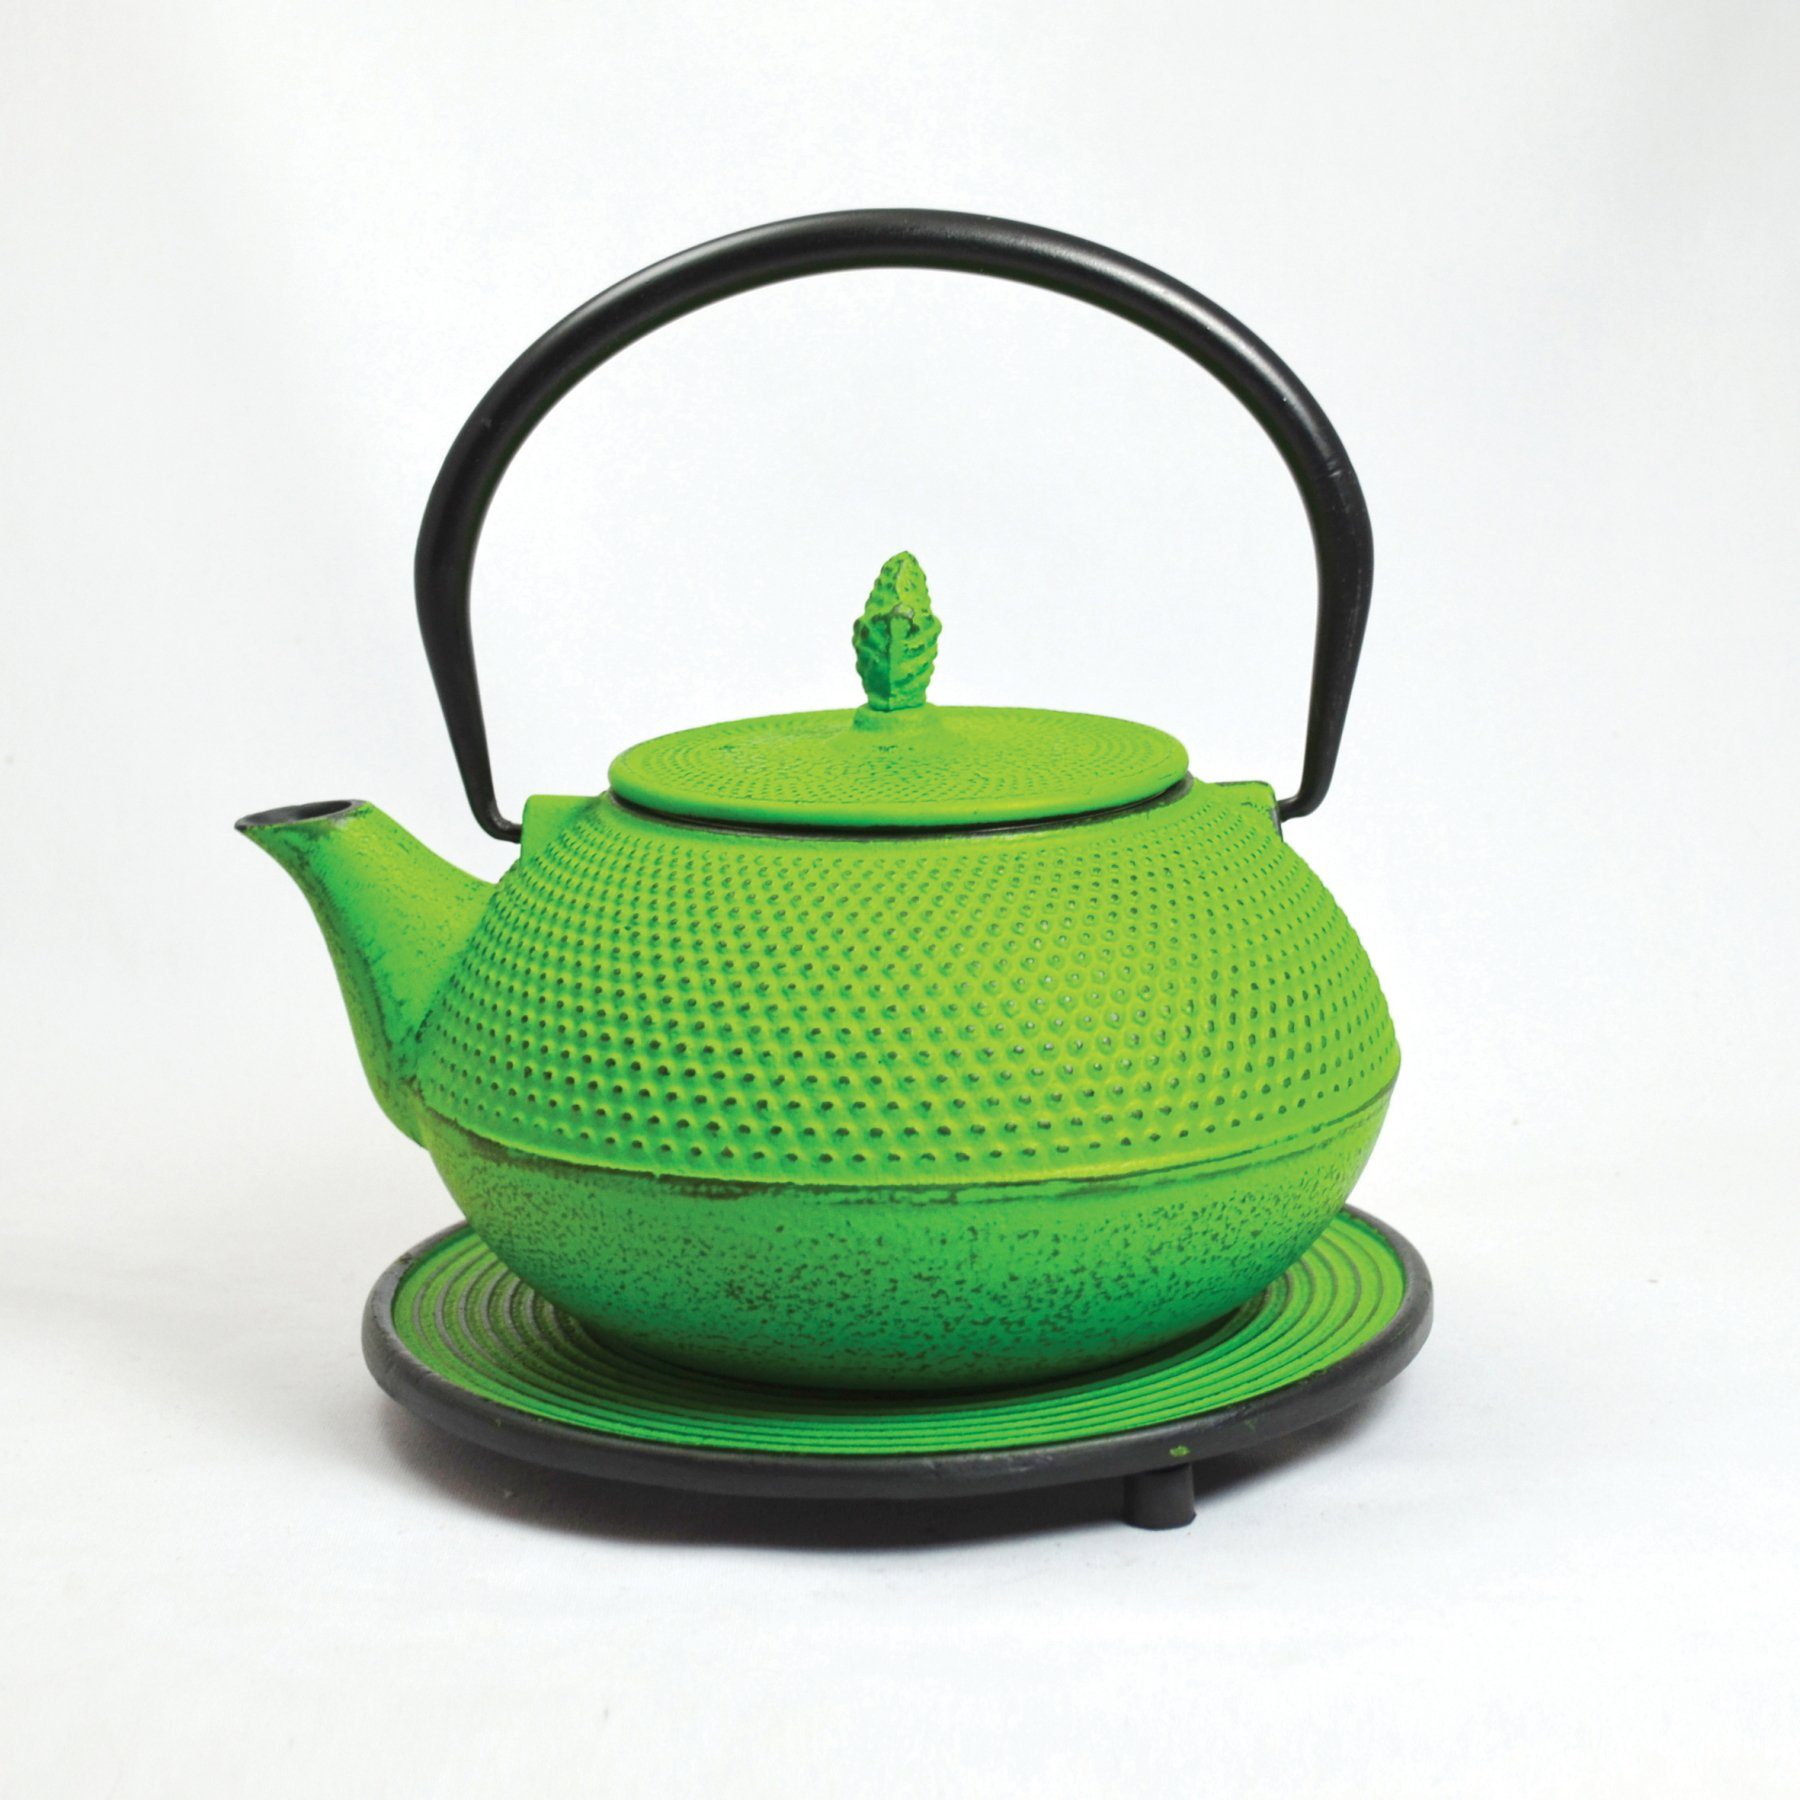 JA-UNENDLICH Teekanne Basic grün, 1.2 l, aus Gusseisen handgefertigt im Sandgussverfahren, innen emailliert Hellgrün